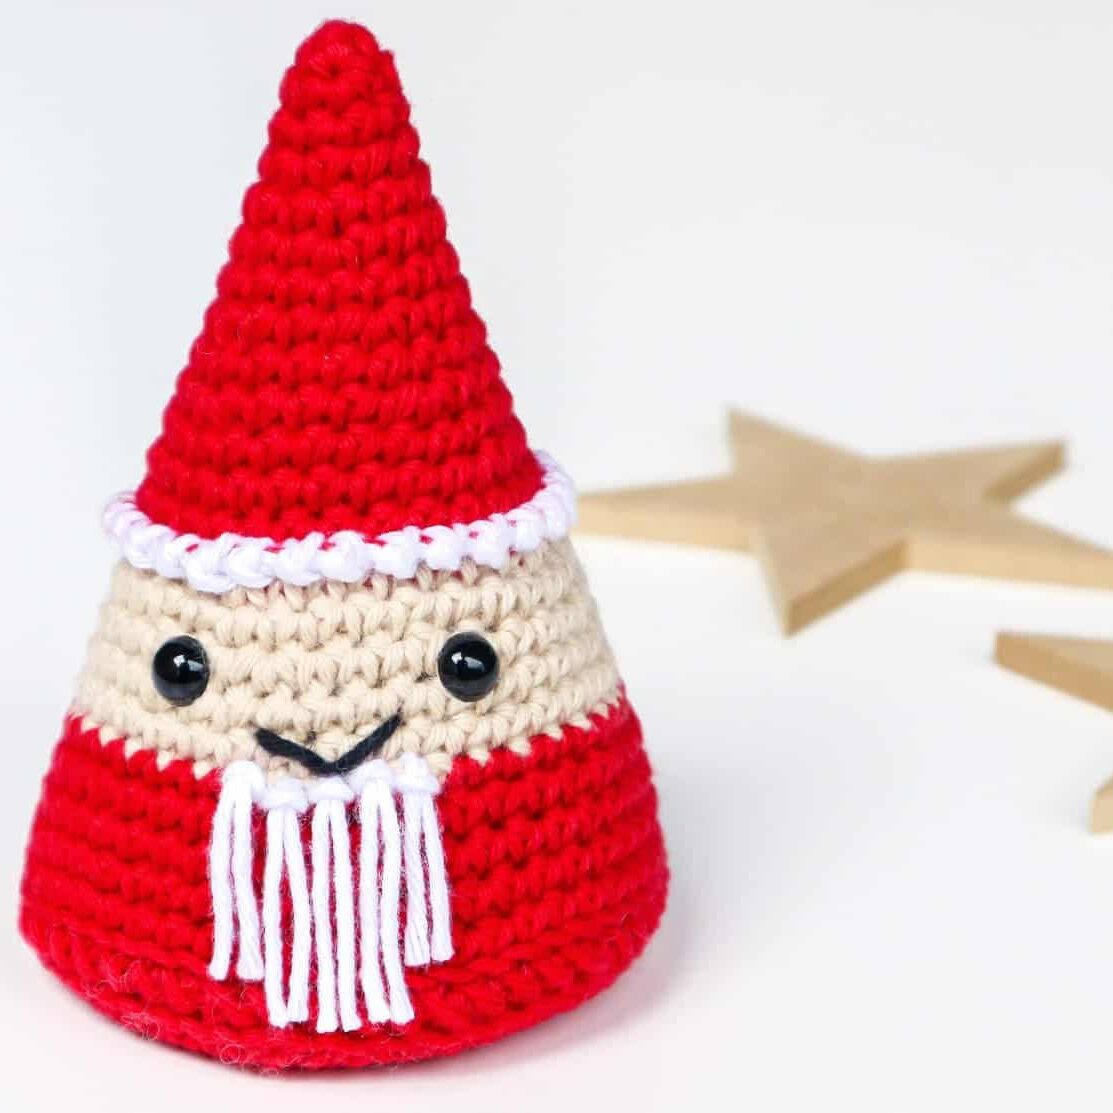 Santa decorations - cute Amigurumi Santa